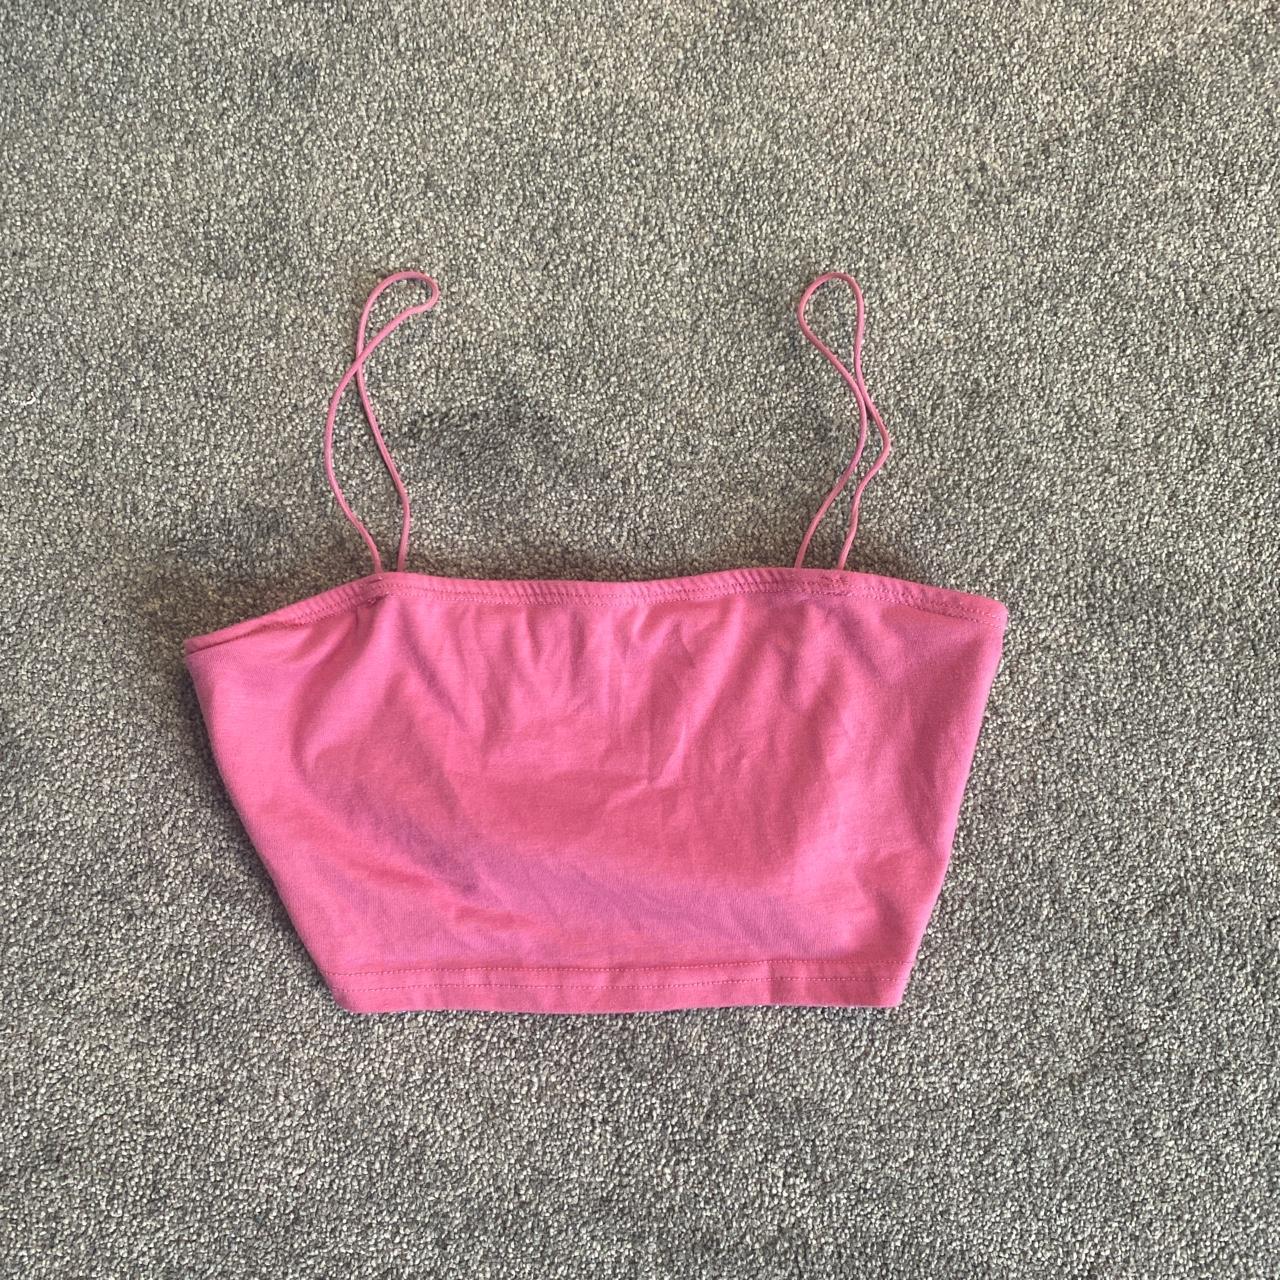 Forever 21 Women's Pink Vest | Depop